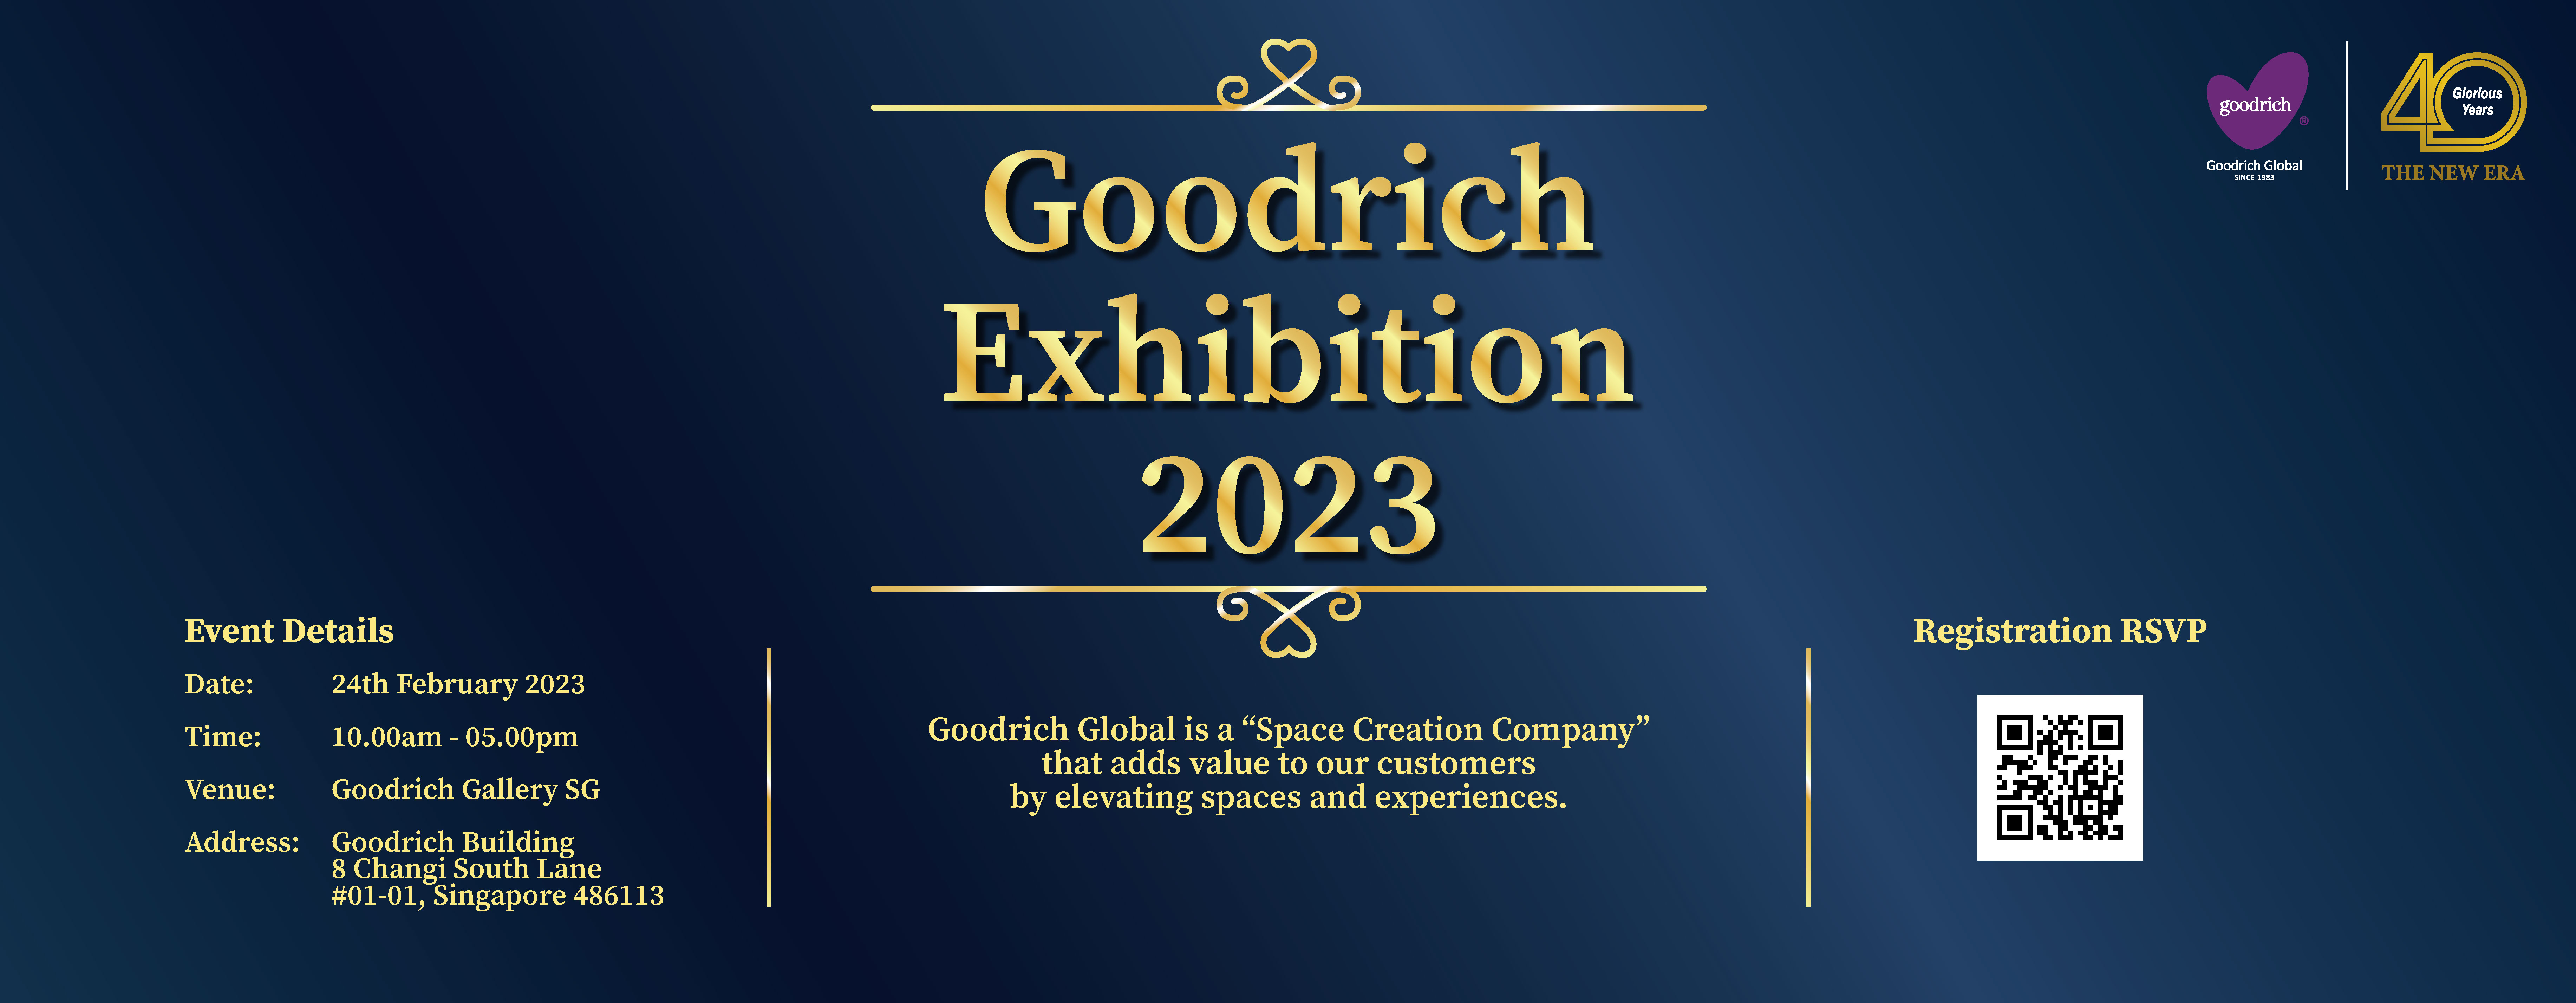 GG-Exhibition-slider-v3 Goodrich Exhibition 2023